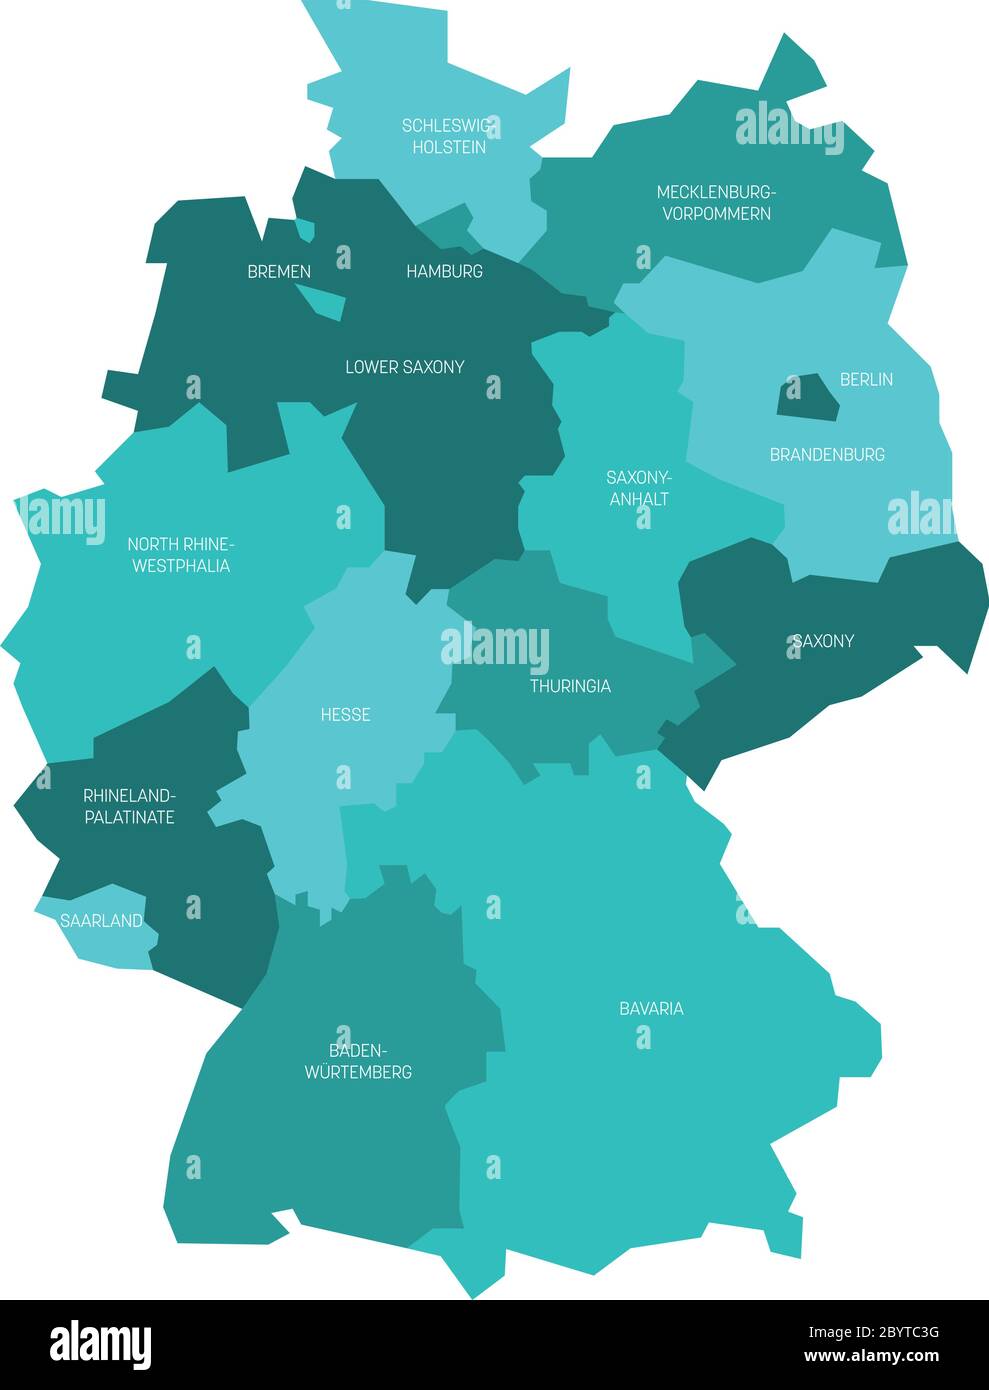 Karte von Deutschland aufgeteilt in 13 Bundesländer und 3 Stadtstaaten - Berlin, Bremen und Hamburg, Europa. Einfache flache Vektorkarte in Türkisblau. Stock Vektor